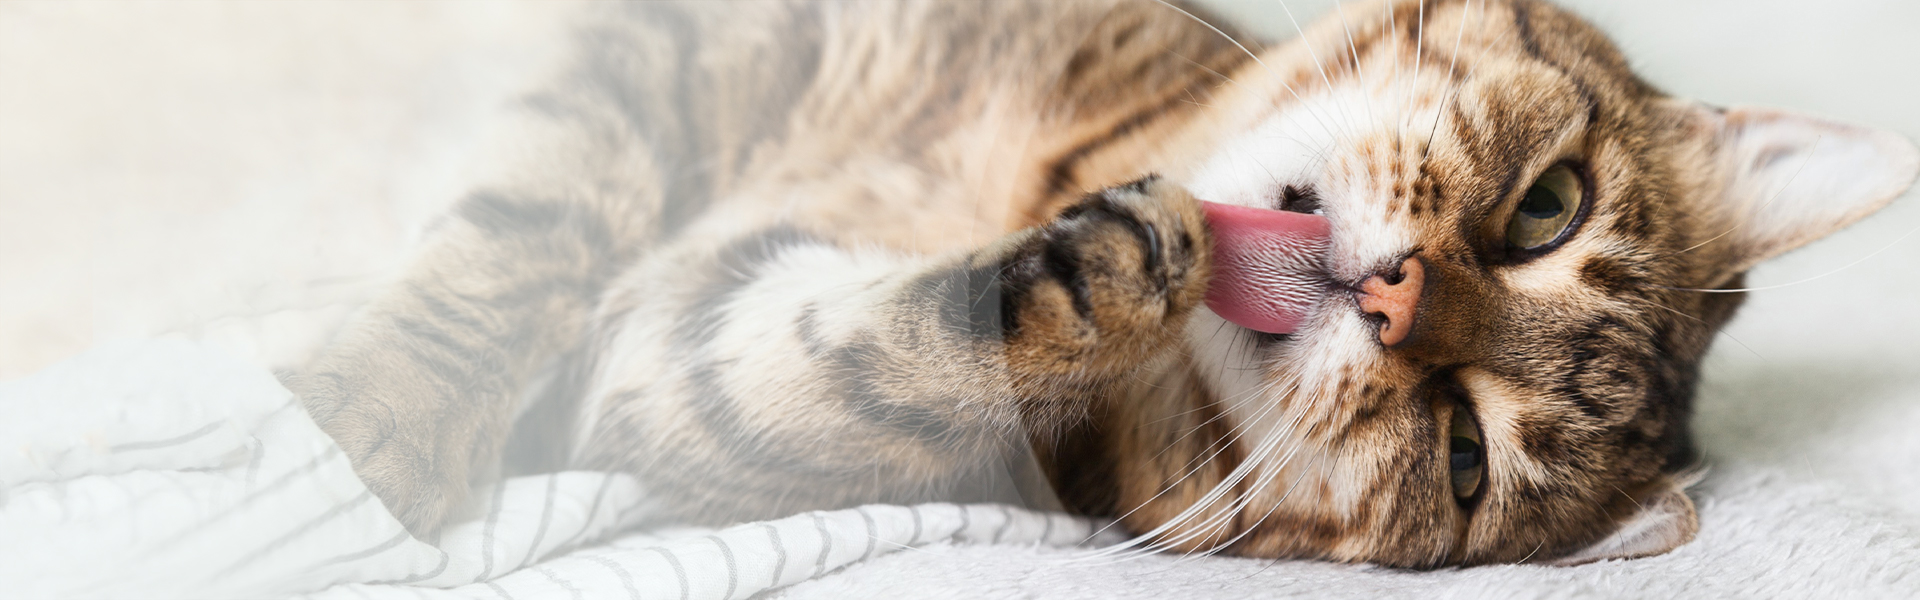 Zakłaczenie u kota – objawy i leczenie. Najskuteczniejsze sposoby na kule włosowe